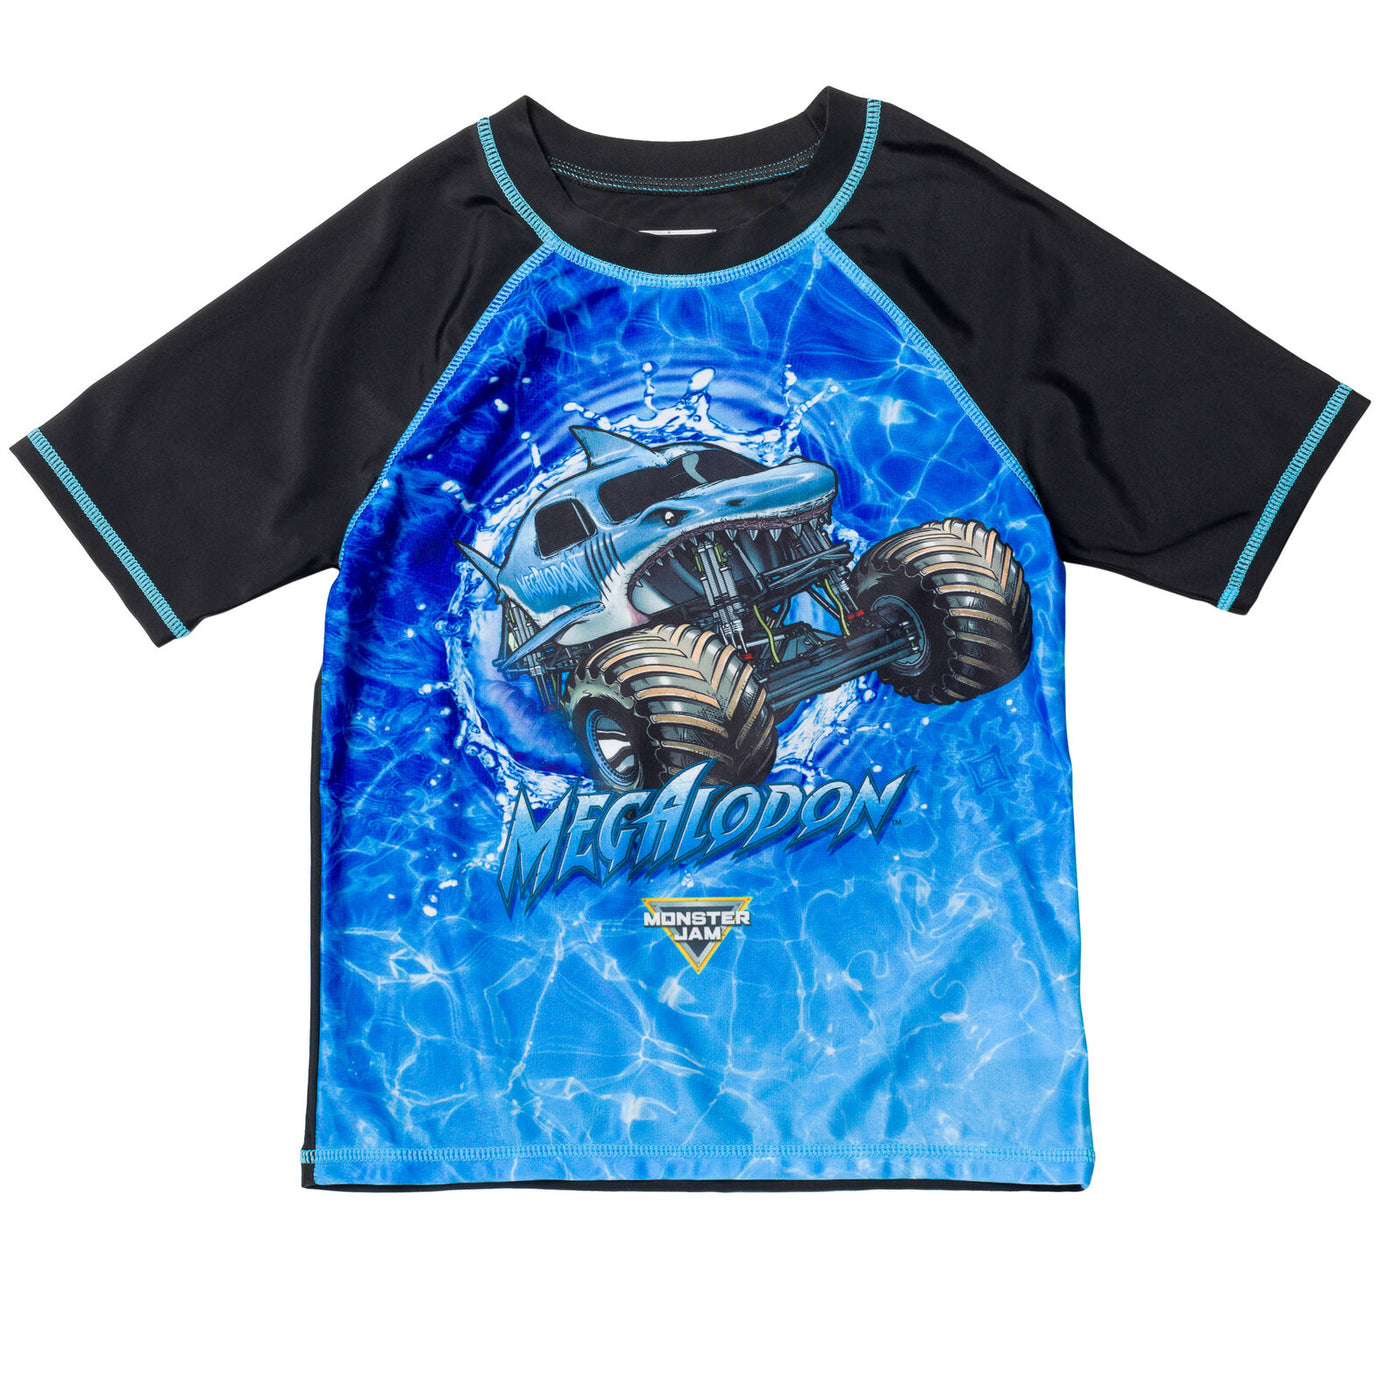 Monster Jam Megalodon UPF 50+ Rash Guard Swim Trunks Outfit Set